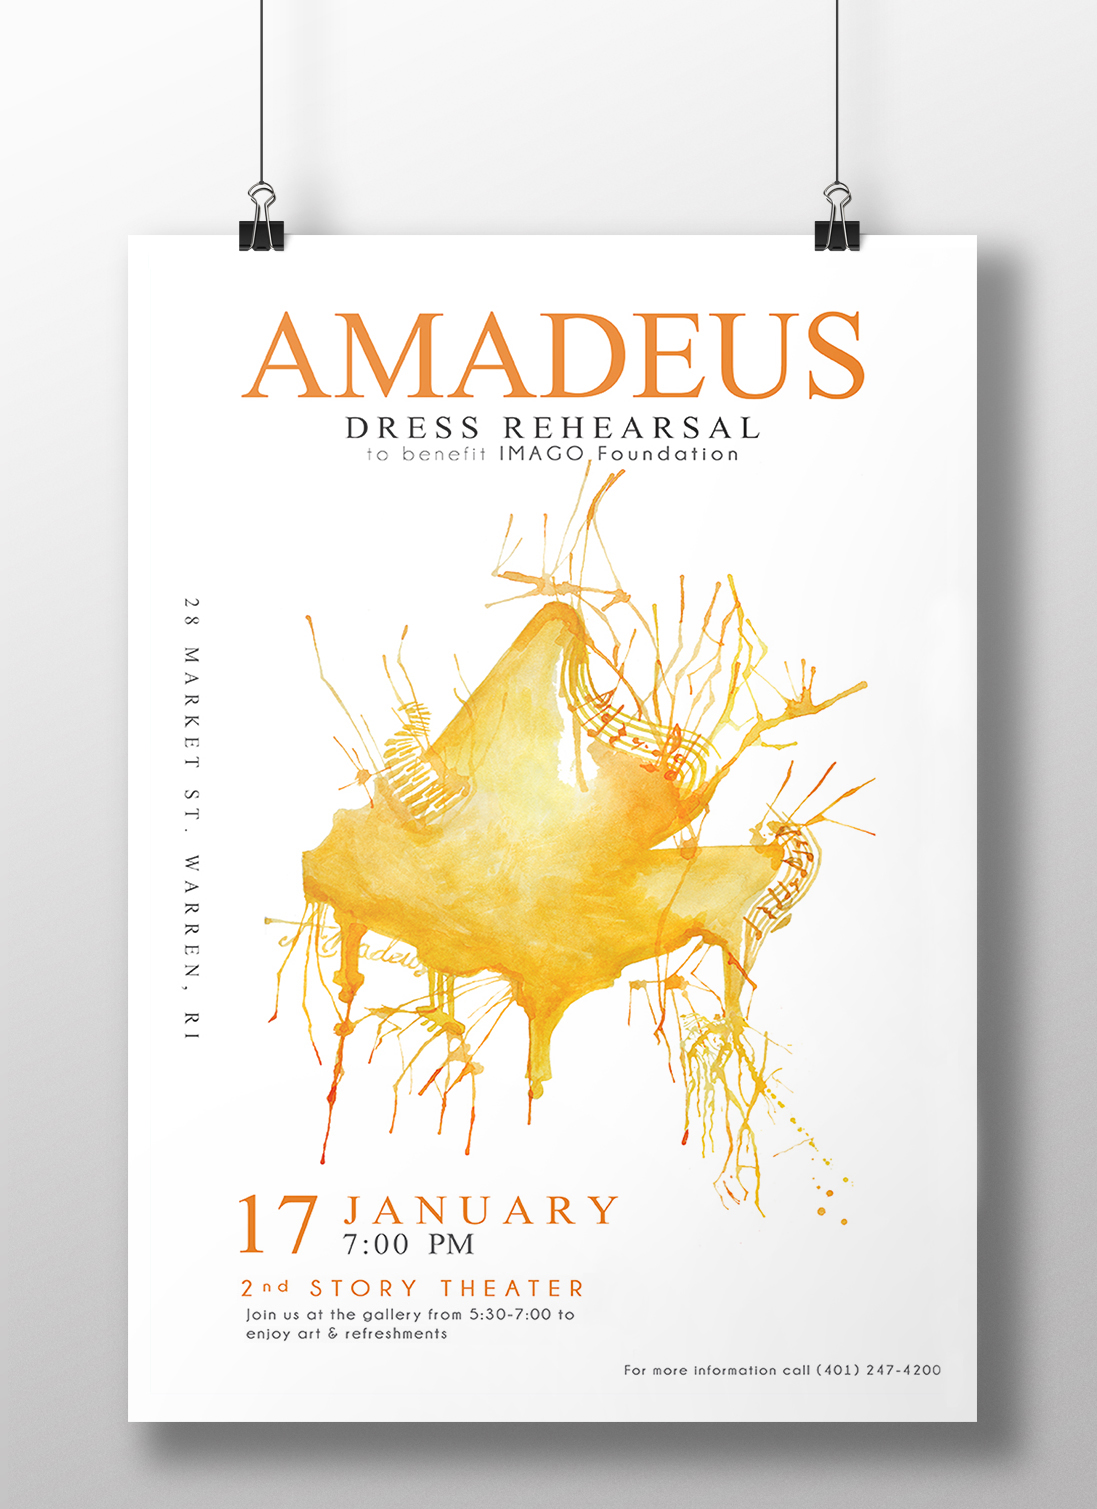 Amadeus Piano_WEB.jpg